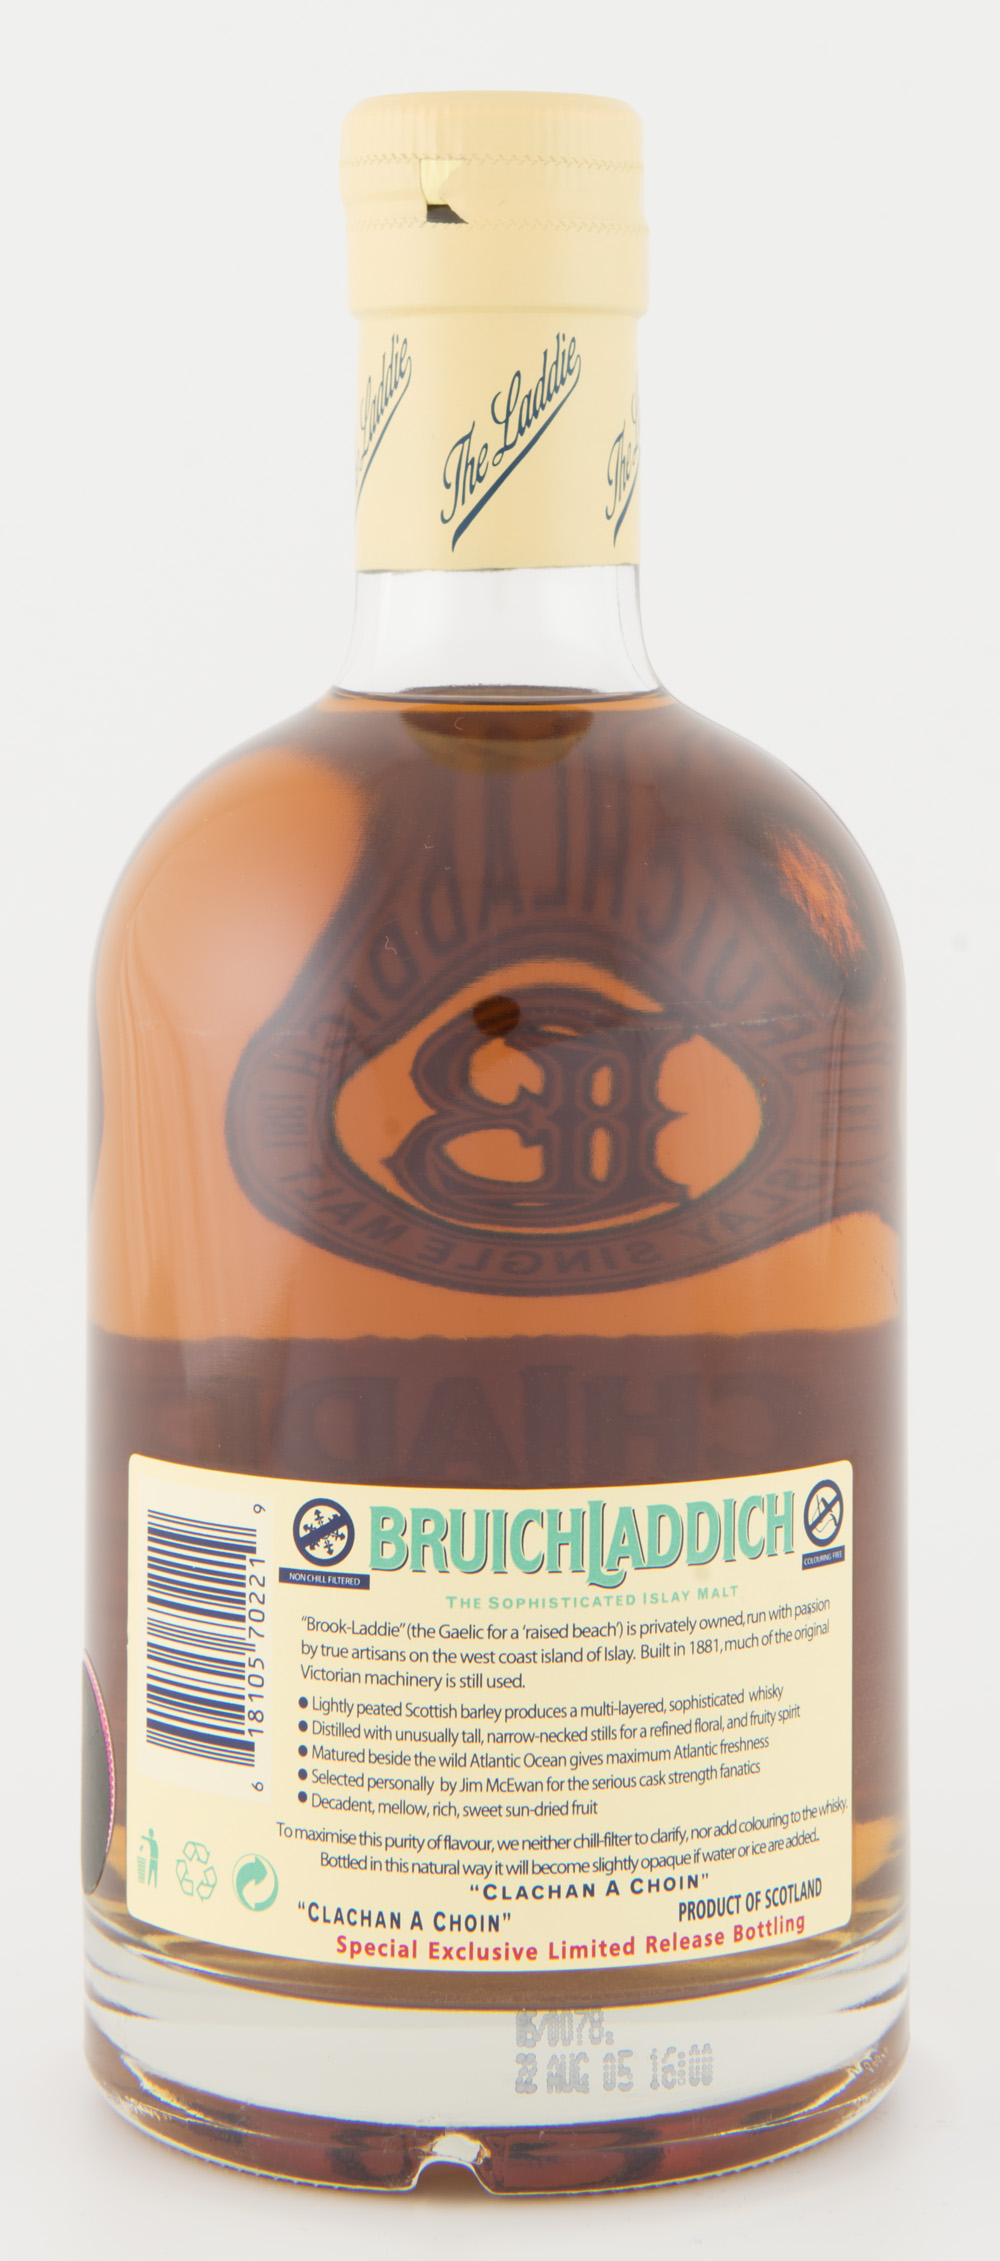 Billede: DSC_3572 Bruichladdich Full Strength 1989 - 16 years - bottle back.jpg